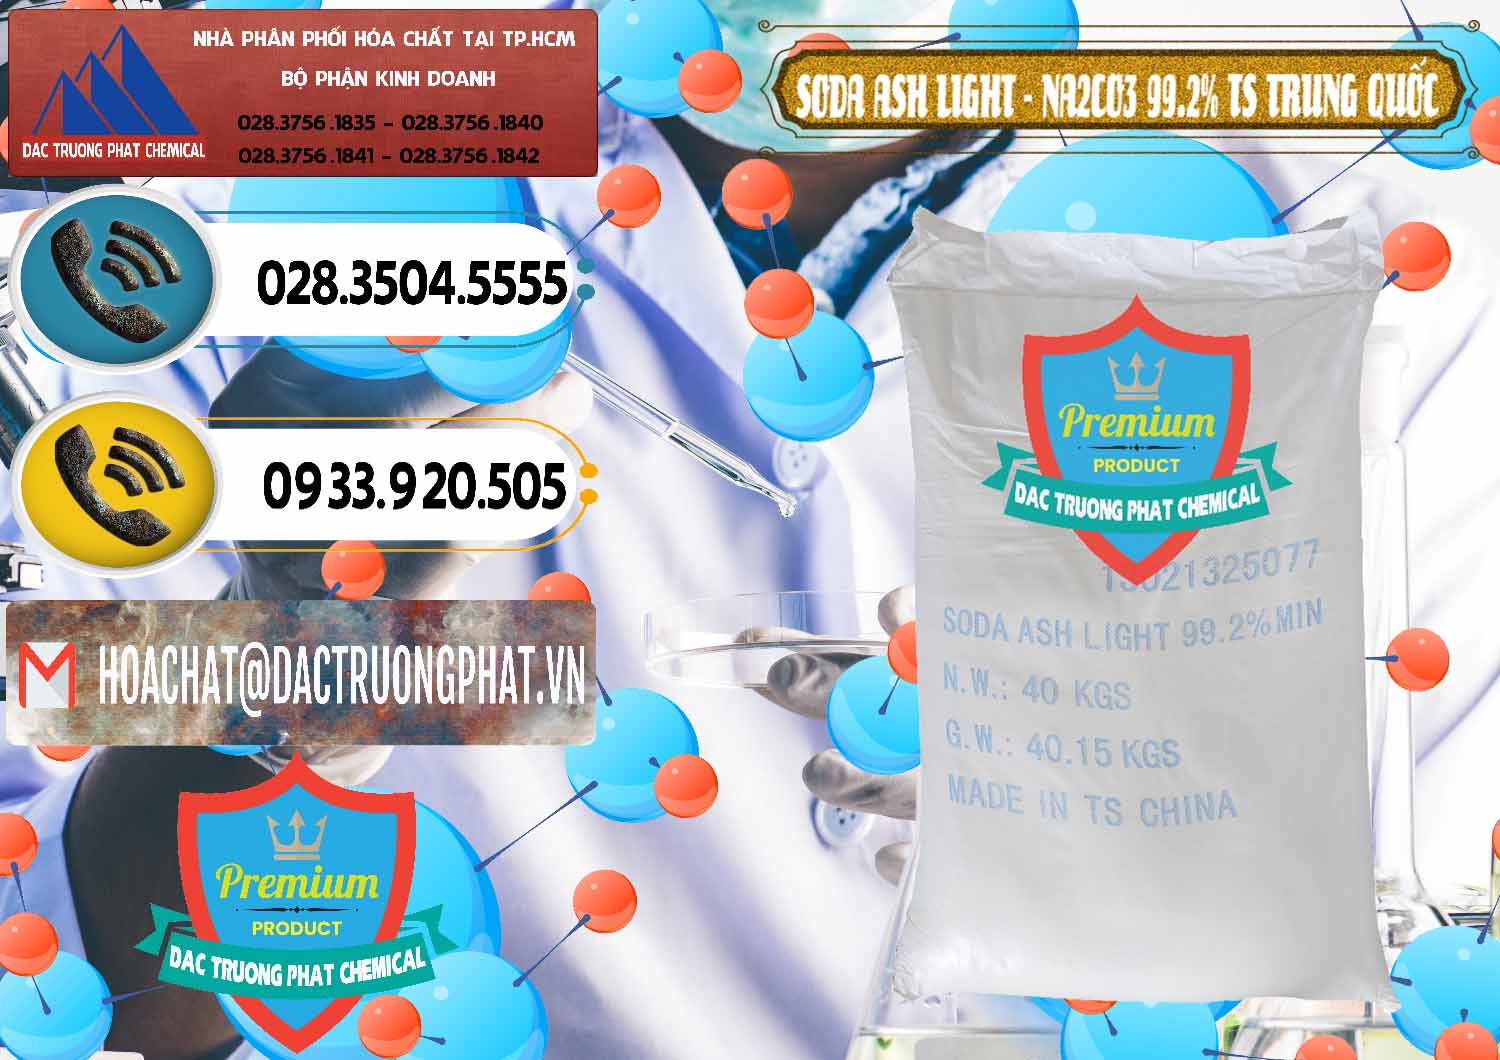 Cty chuyên phân phối ( bán ) Soda Ash Light - NA2CO3 TS Trung Quốc China - 0221 - Nơi phân phối _ nhập khẩu hóa chất tại TP.HCM - hoachatdetnhuom.vn